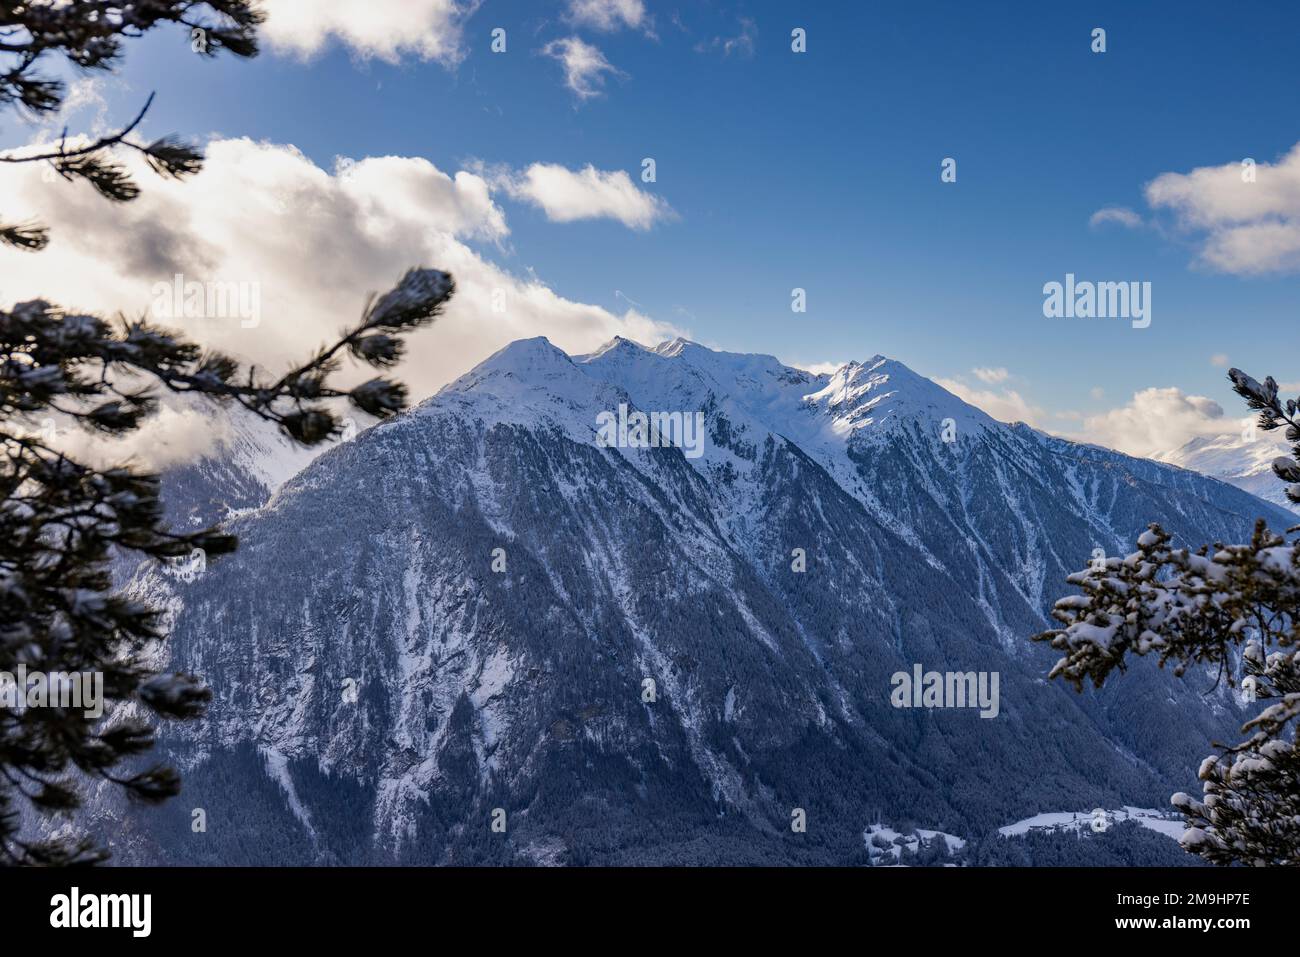 Bergpanorama, verschneite Berge bei blauem Himmel mit ein paar Wolken Stock Photo